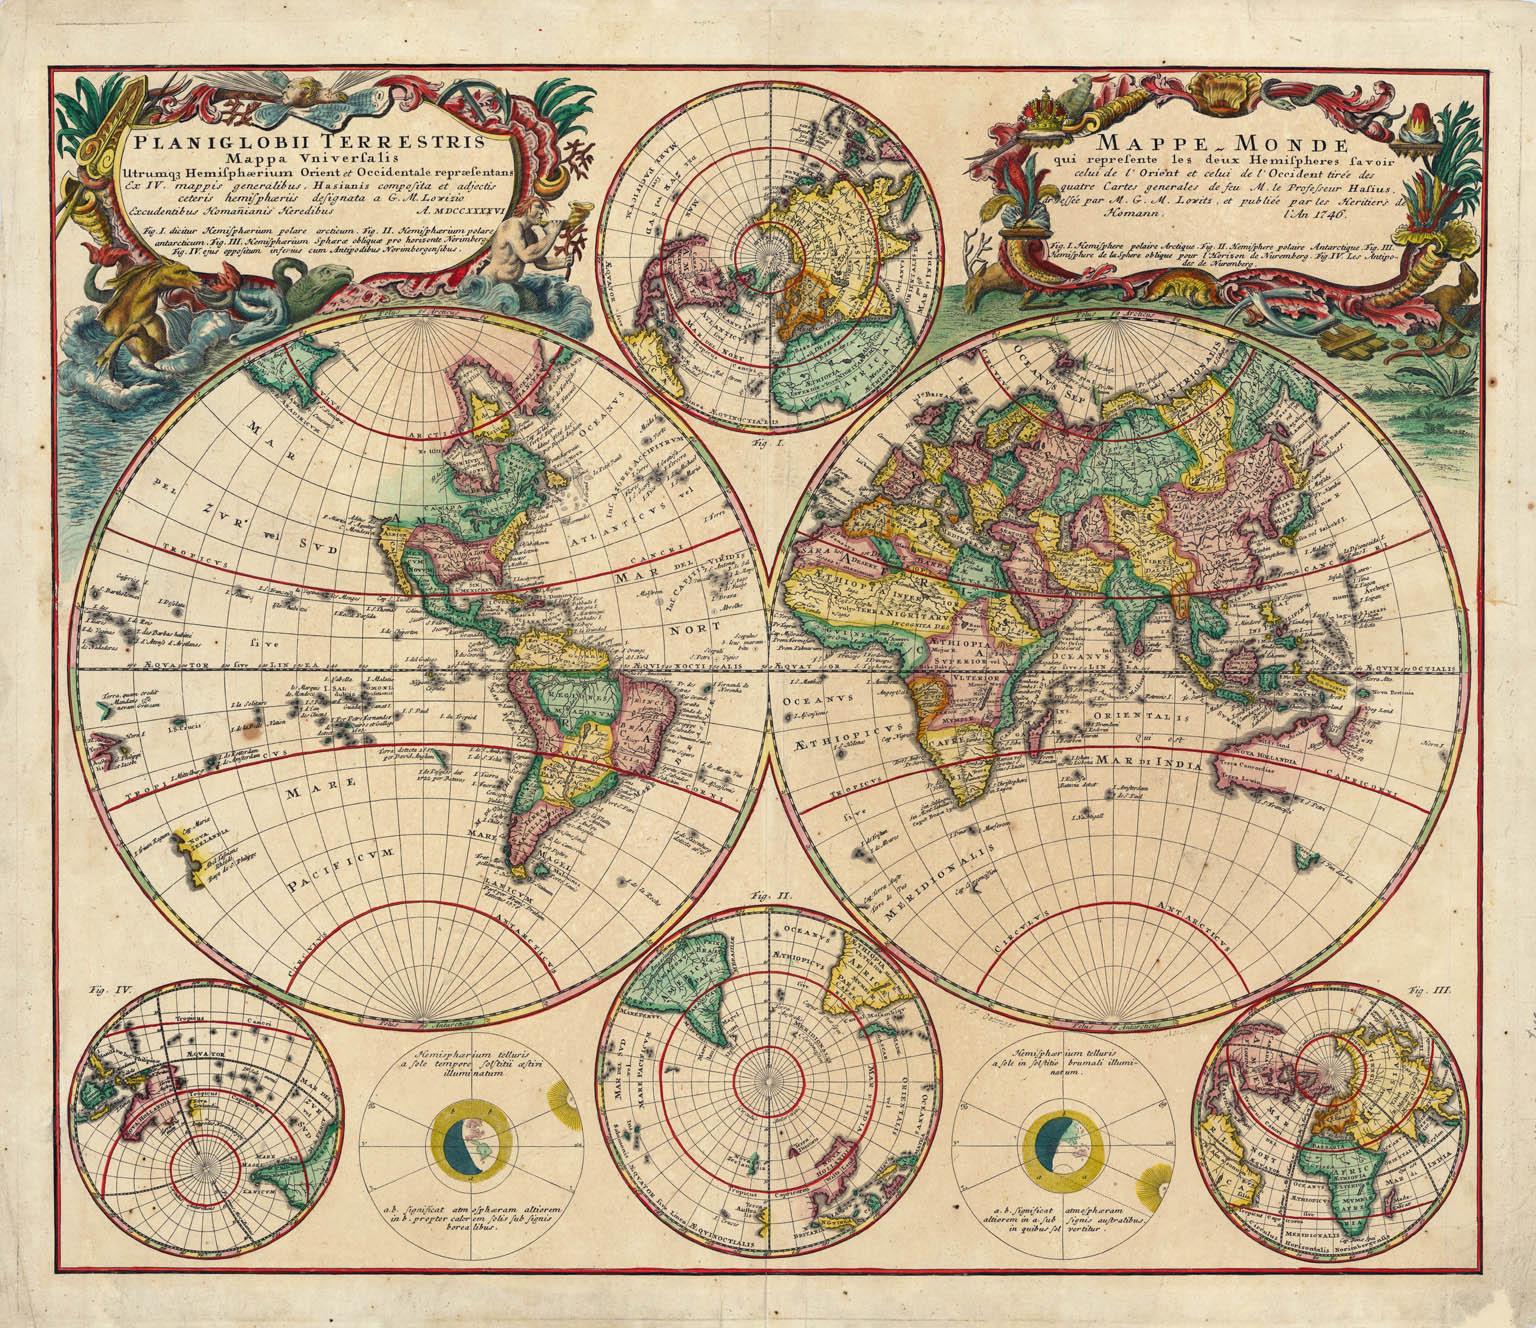 Planiglobii Terrestris Mappa Universalis / Mappe Monde - Art by Homann Heirs